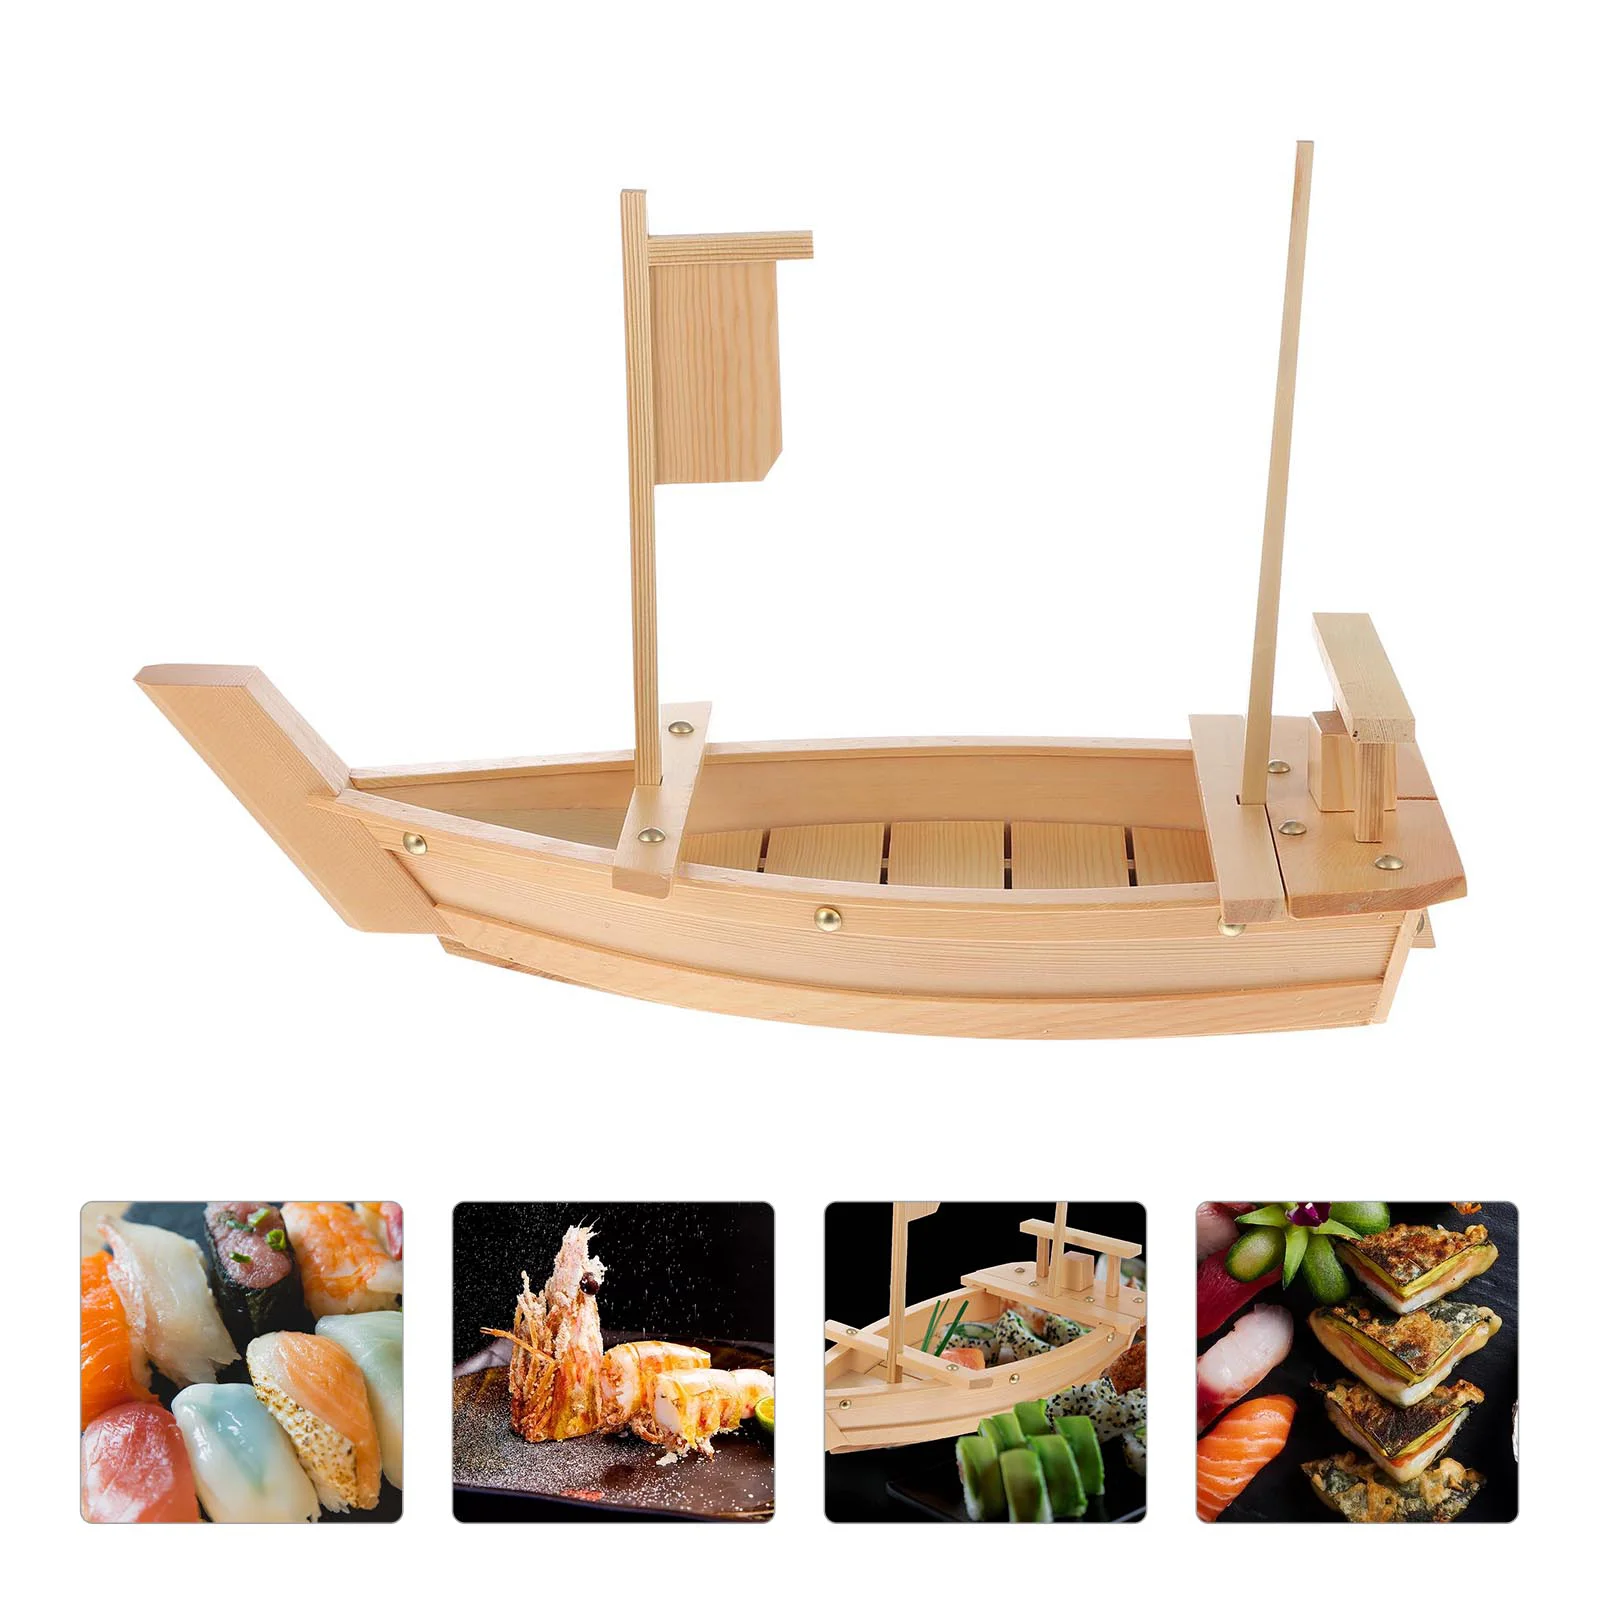 

Поднос для суши, лодки, поднос для подачи еды в японском стиле, тарелка для пирожных, деревянная форма, безопасность для дома